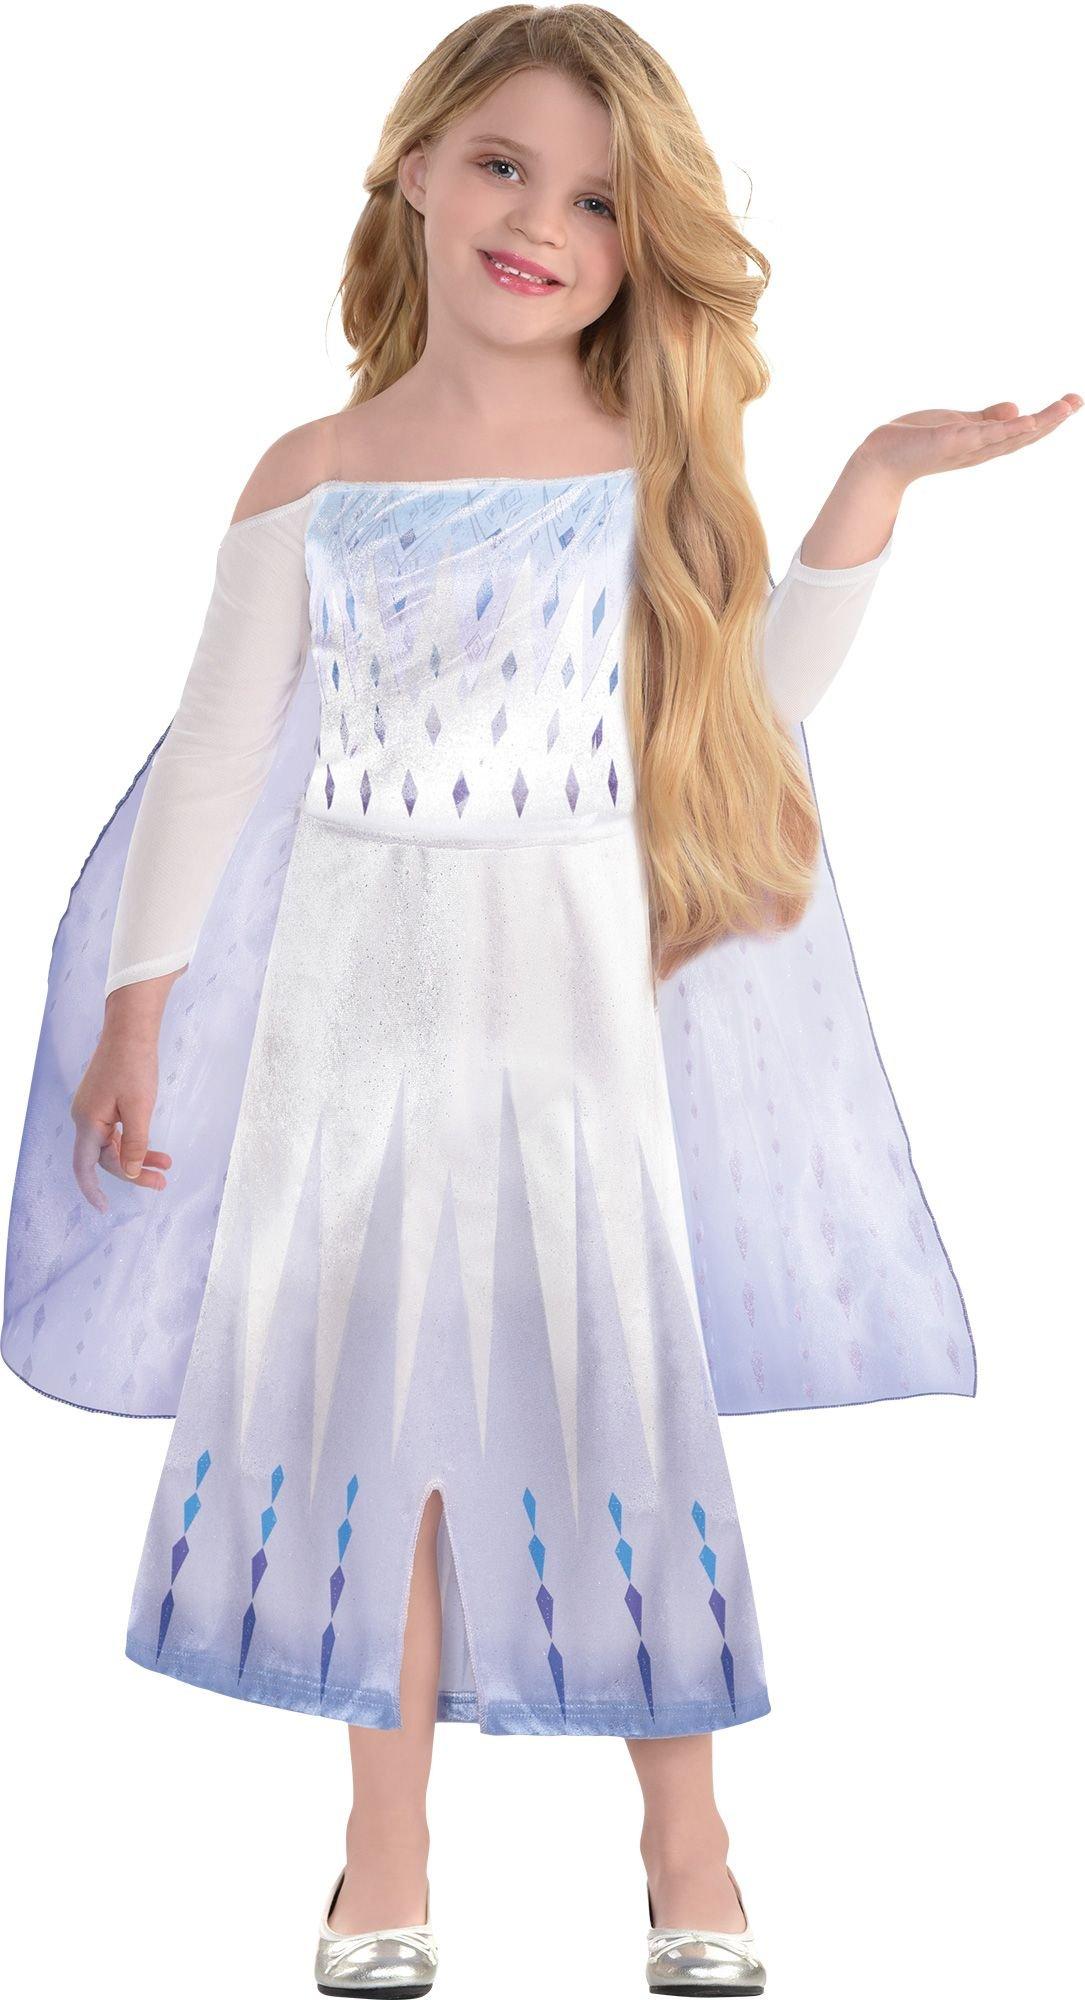 Kids' Epilogue Costume - Frozen 2 | Party City